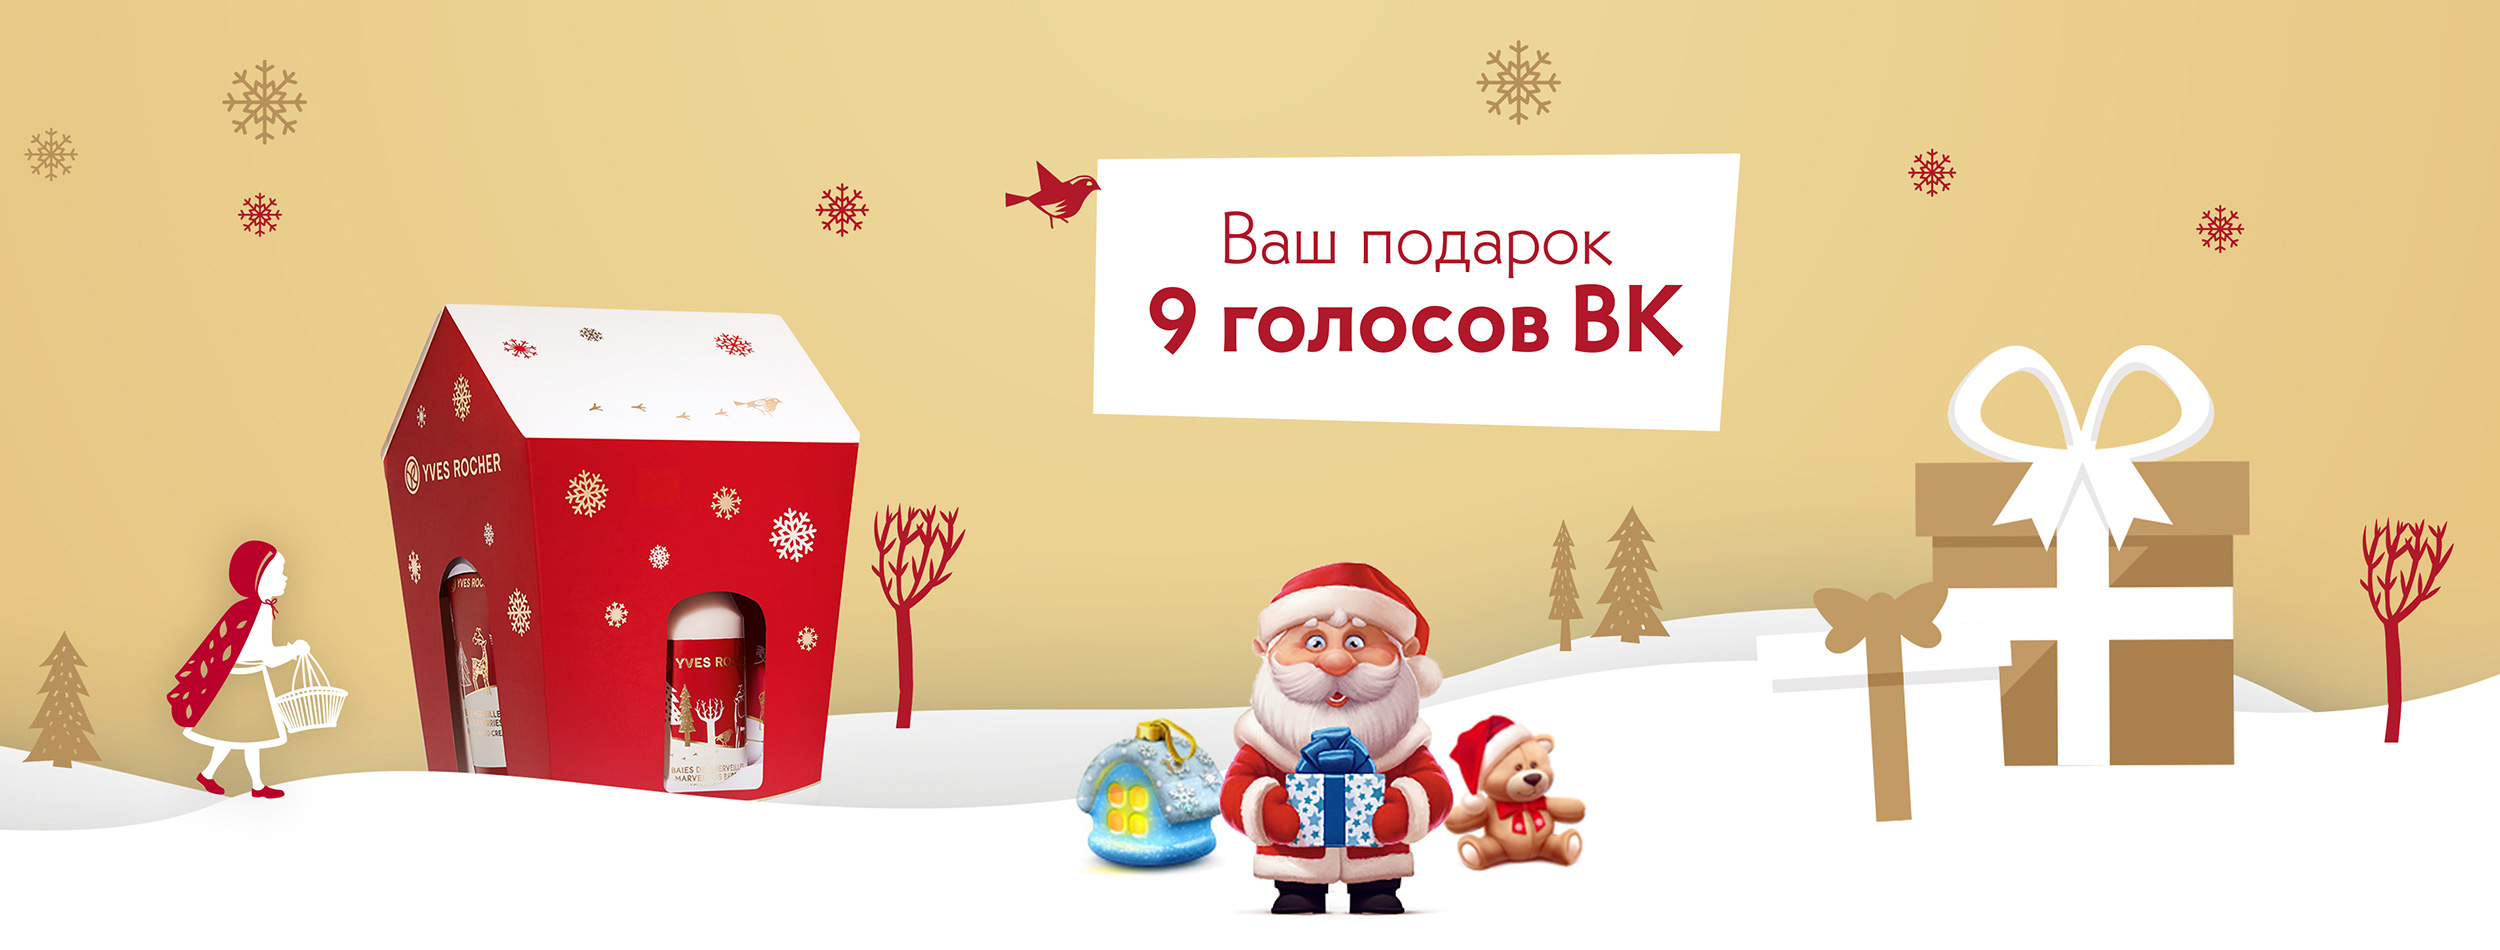 Bonus program VKontakte